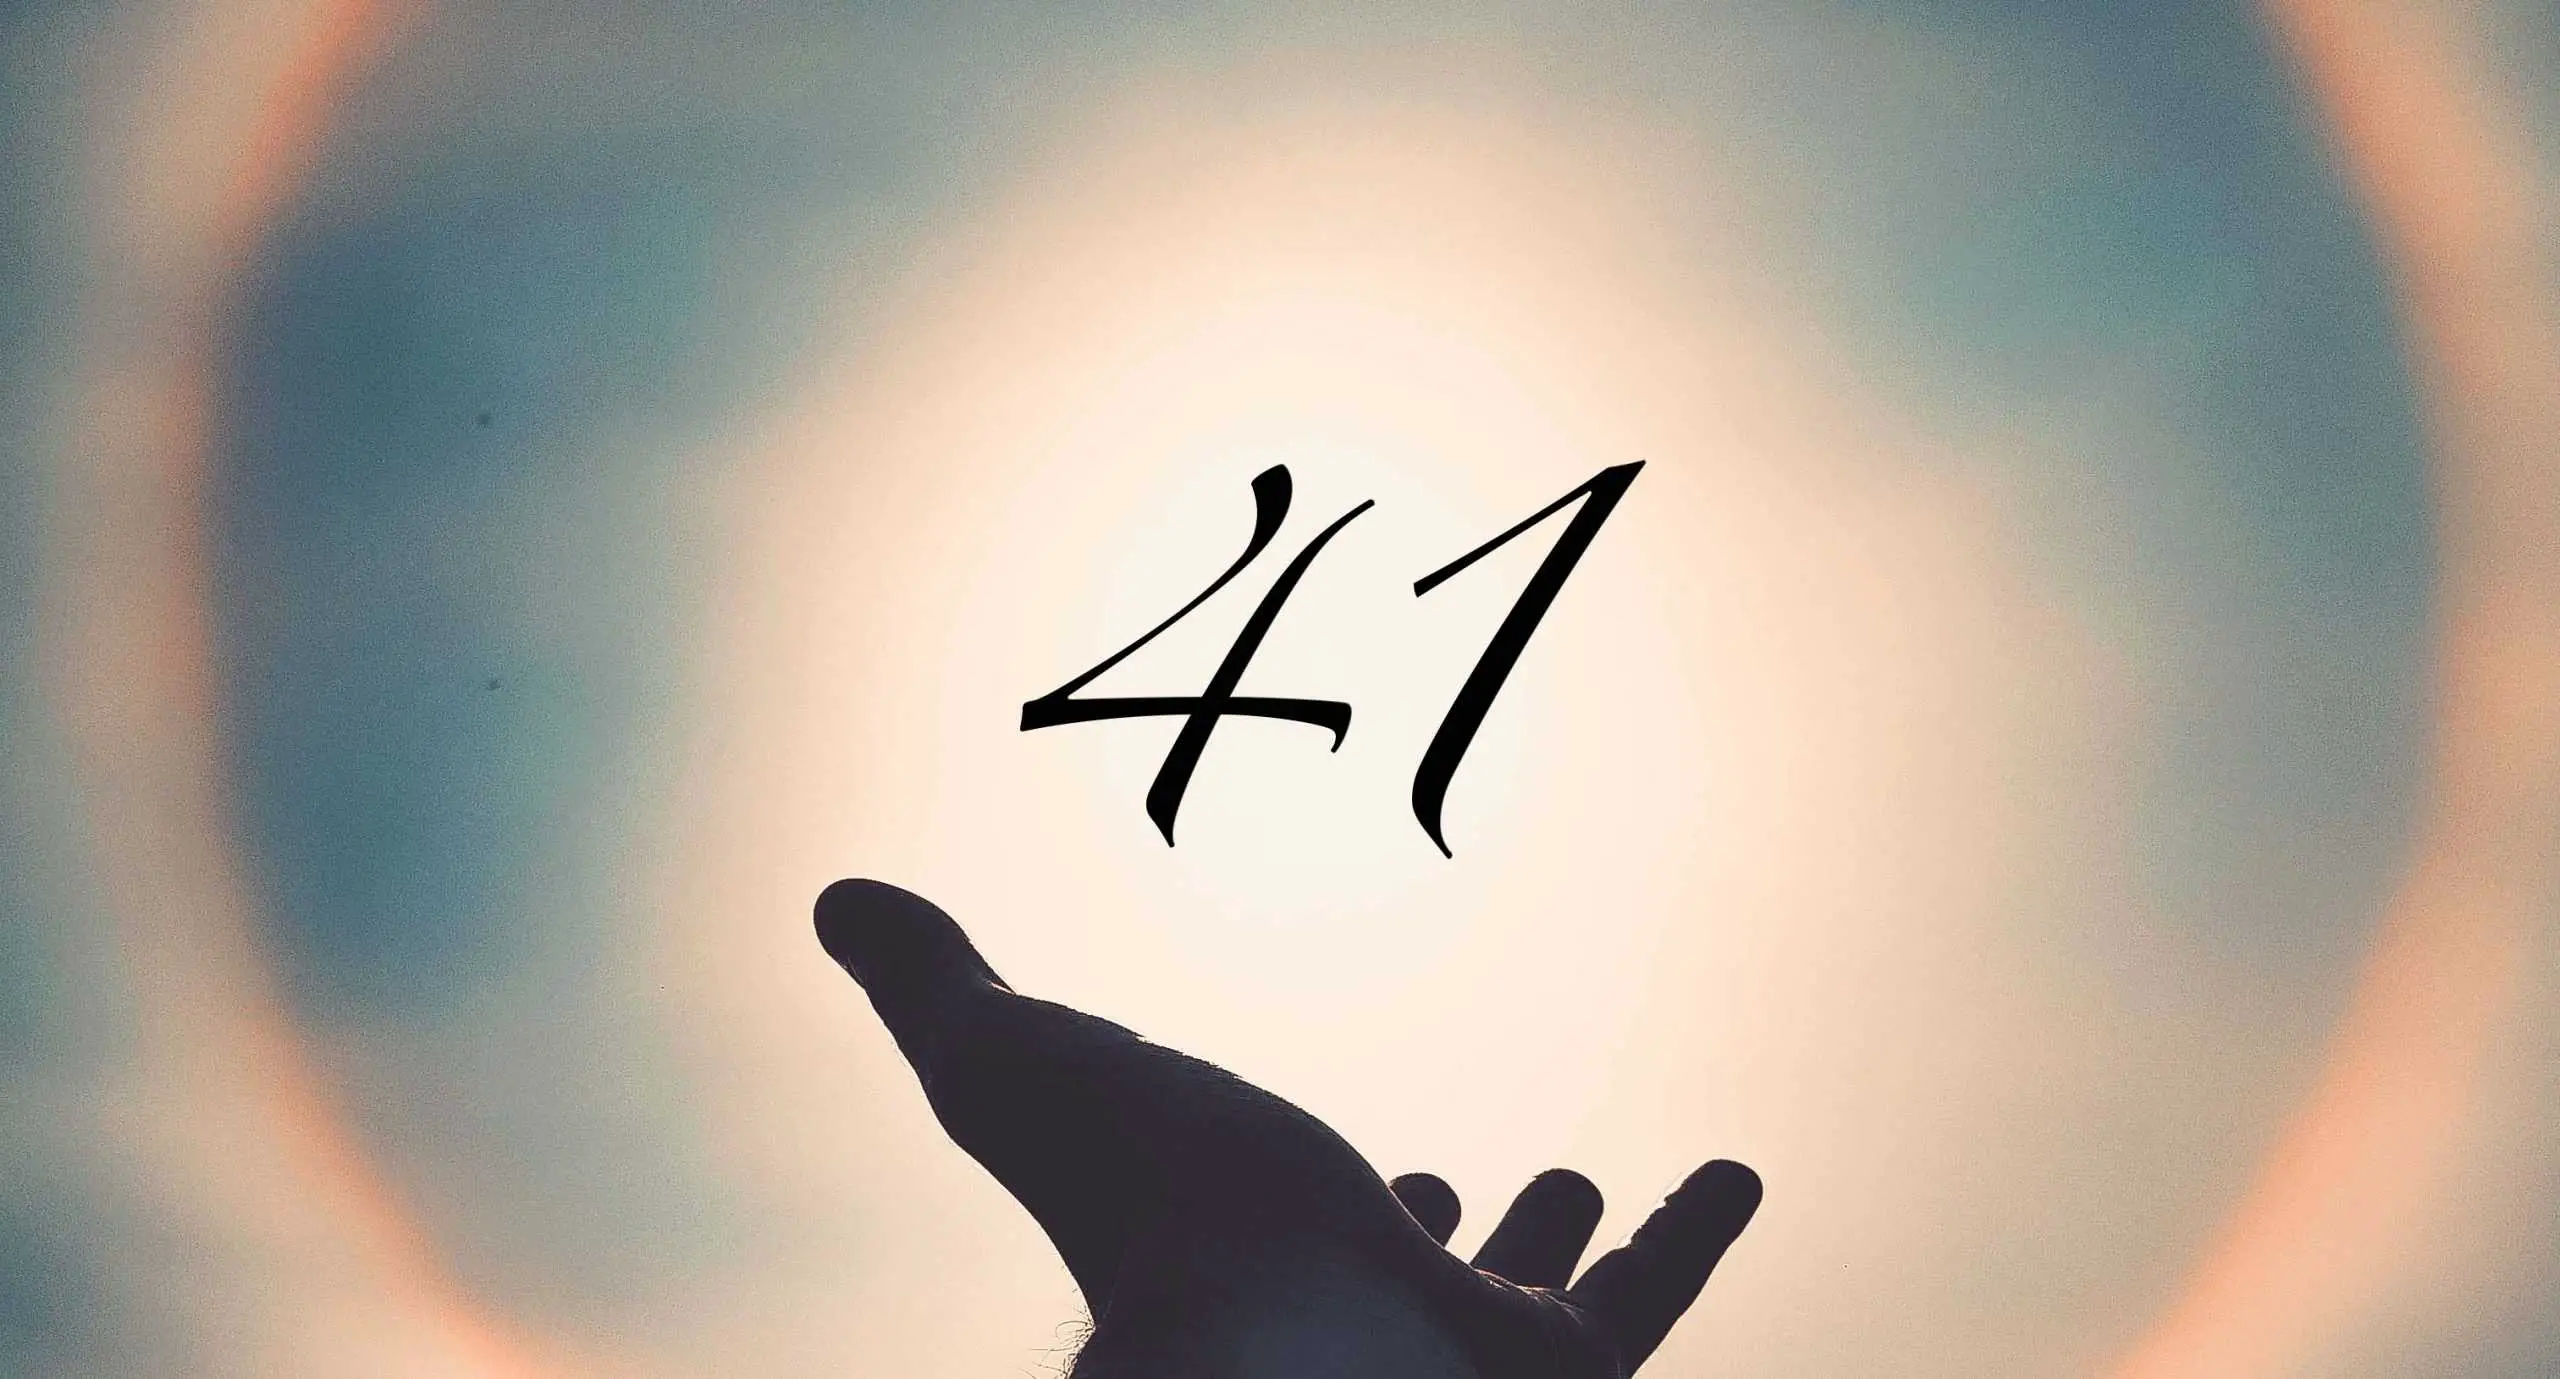 Signification du nombre 41